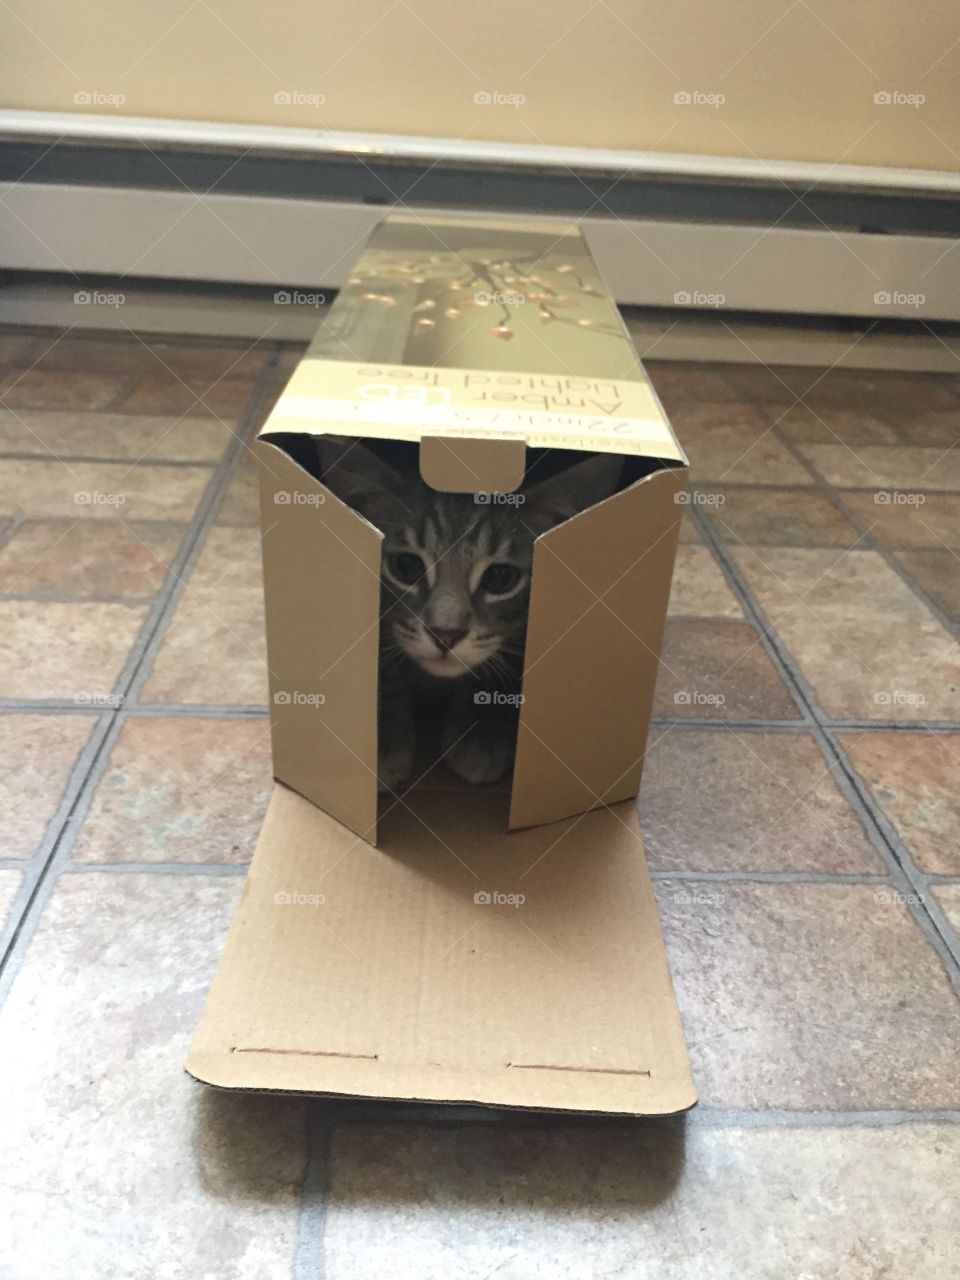 Just a cat in a box. 